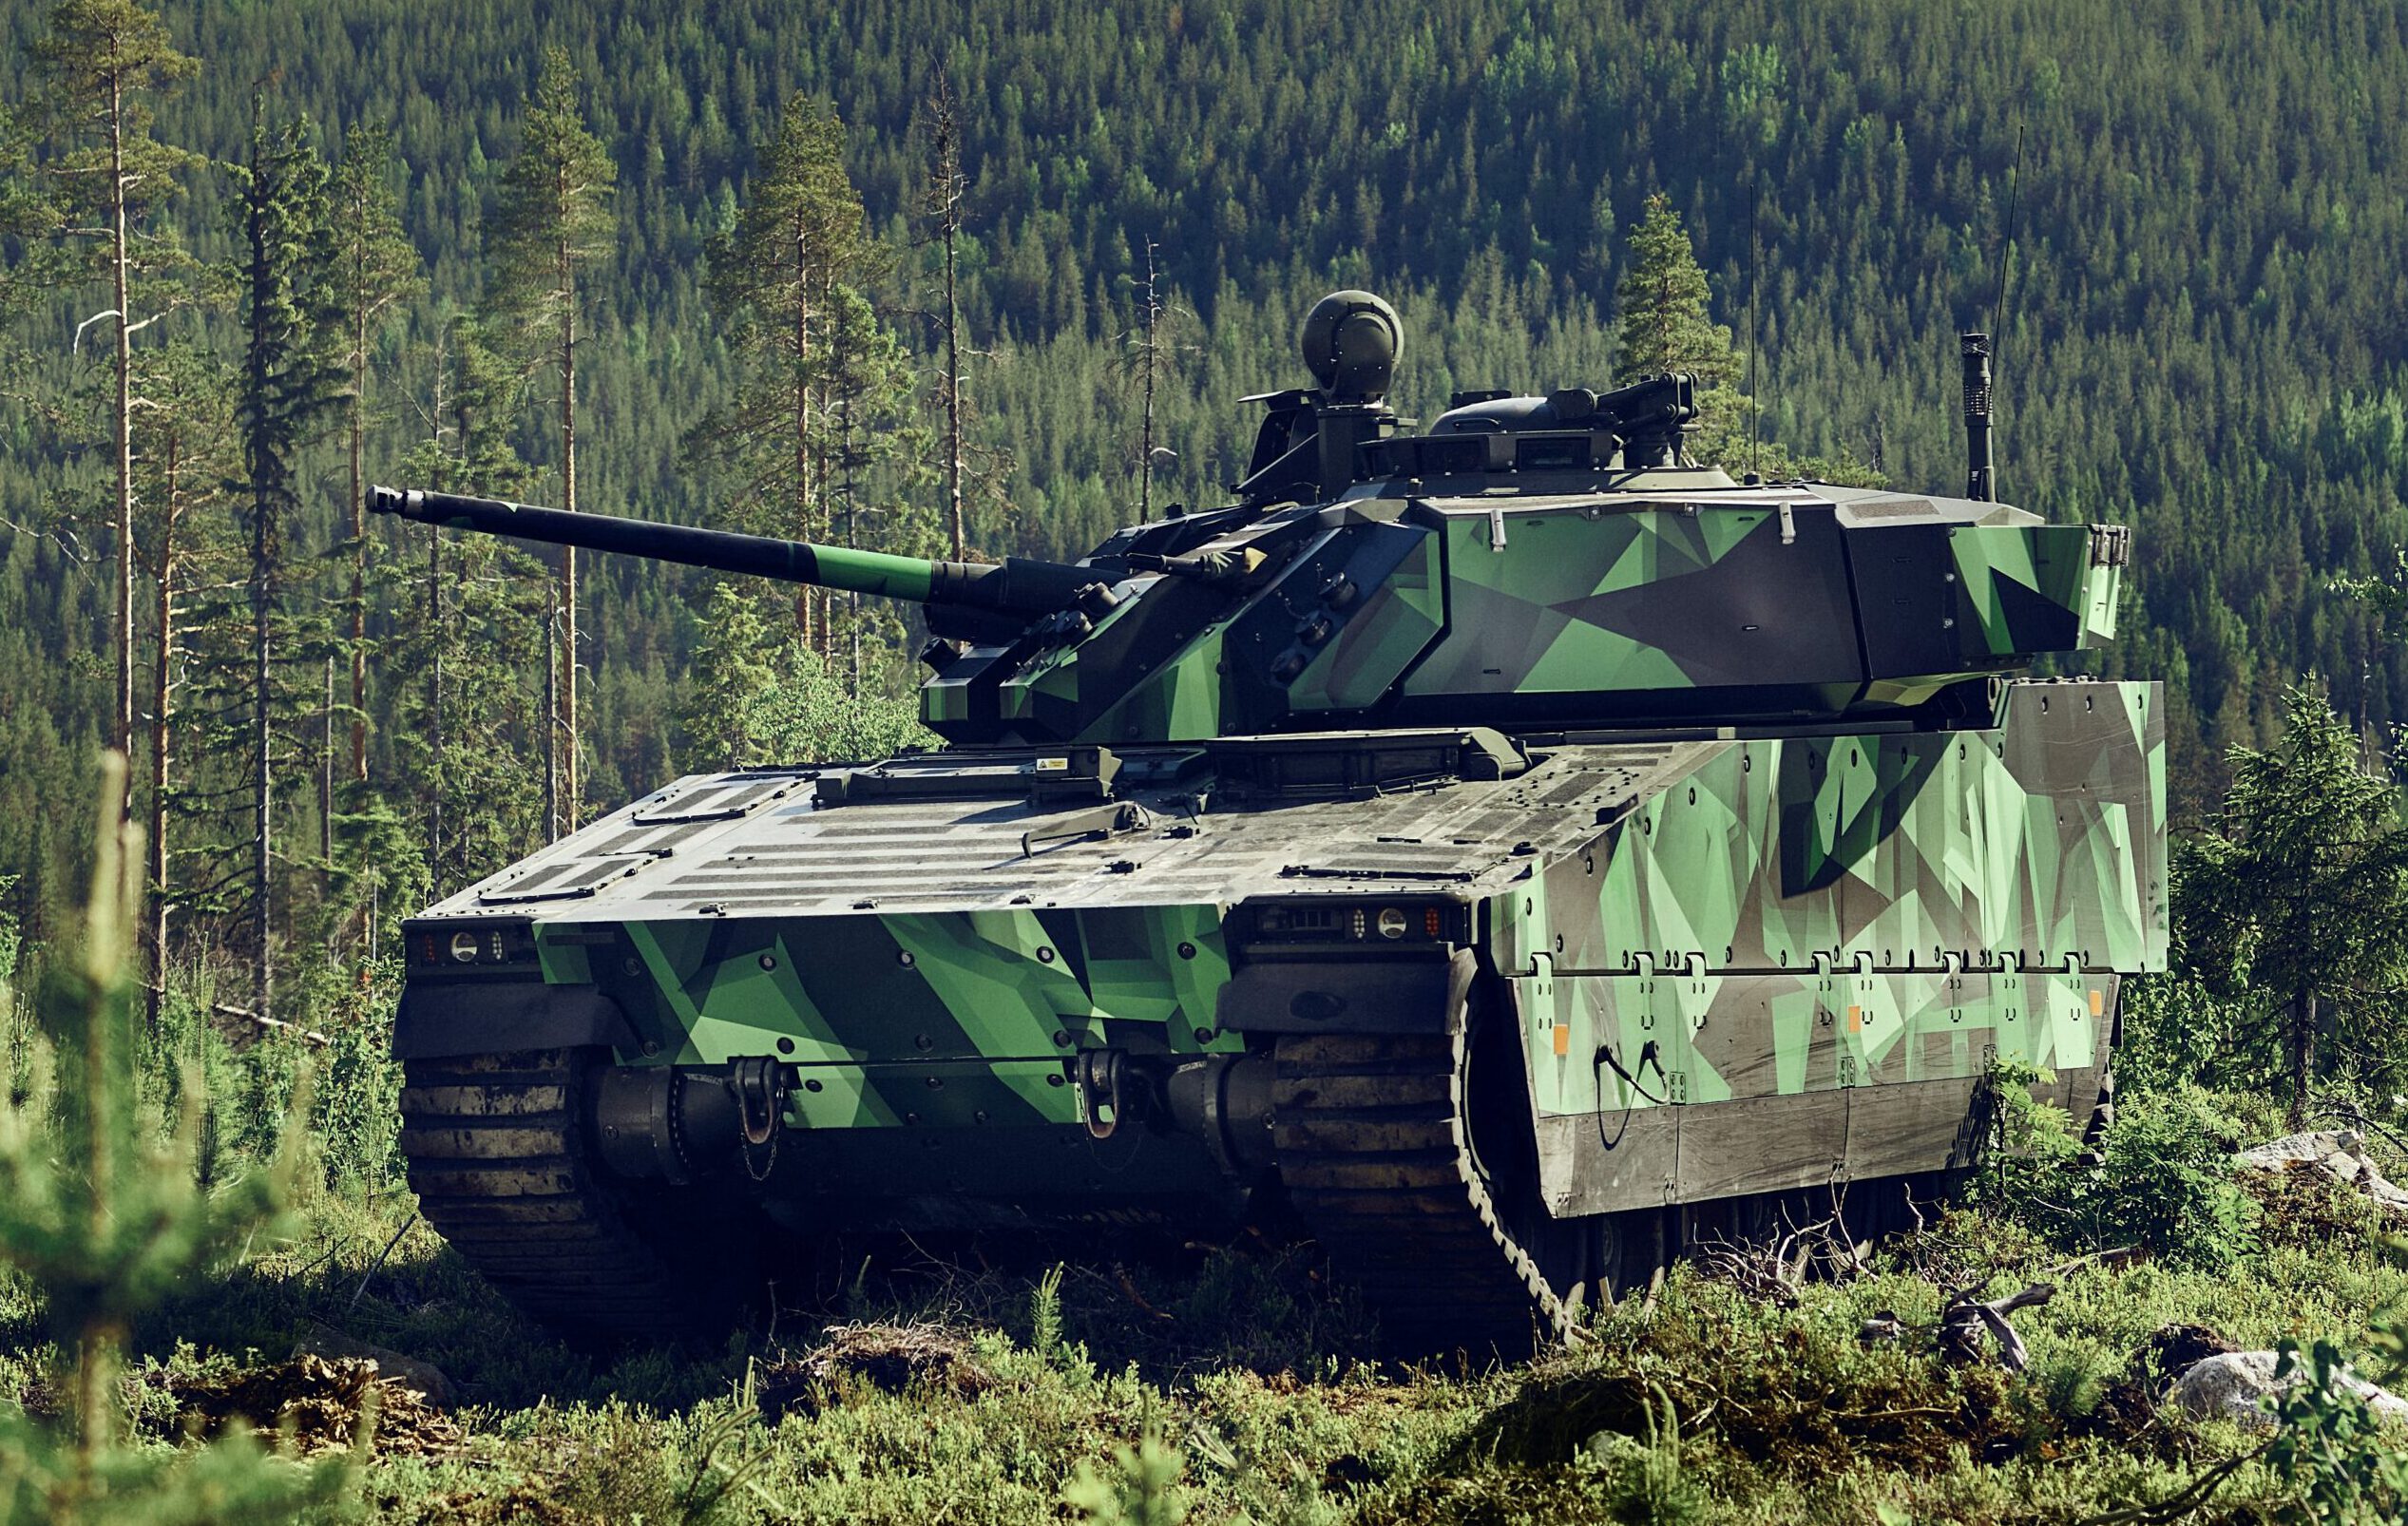 Slovakia announces the CV90 Mk IV as its preferred IFV